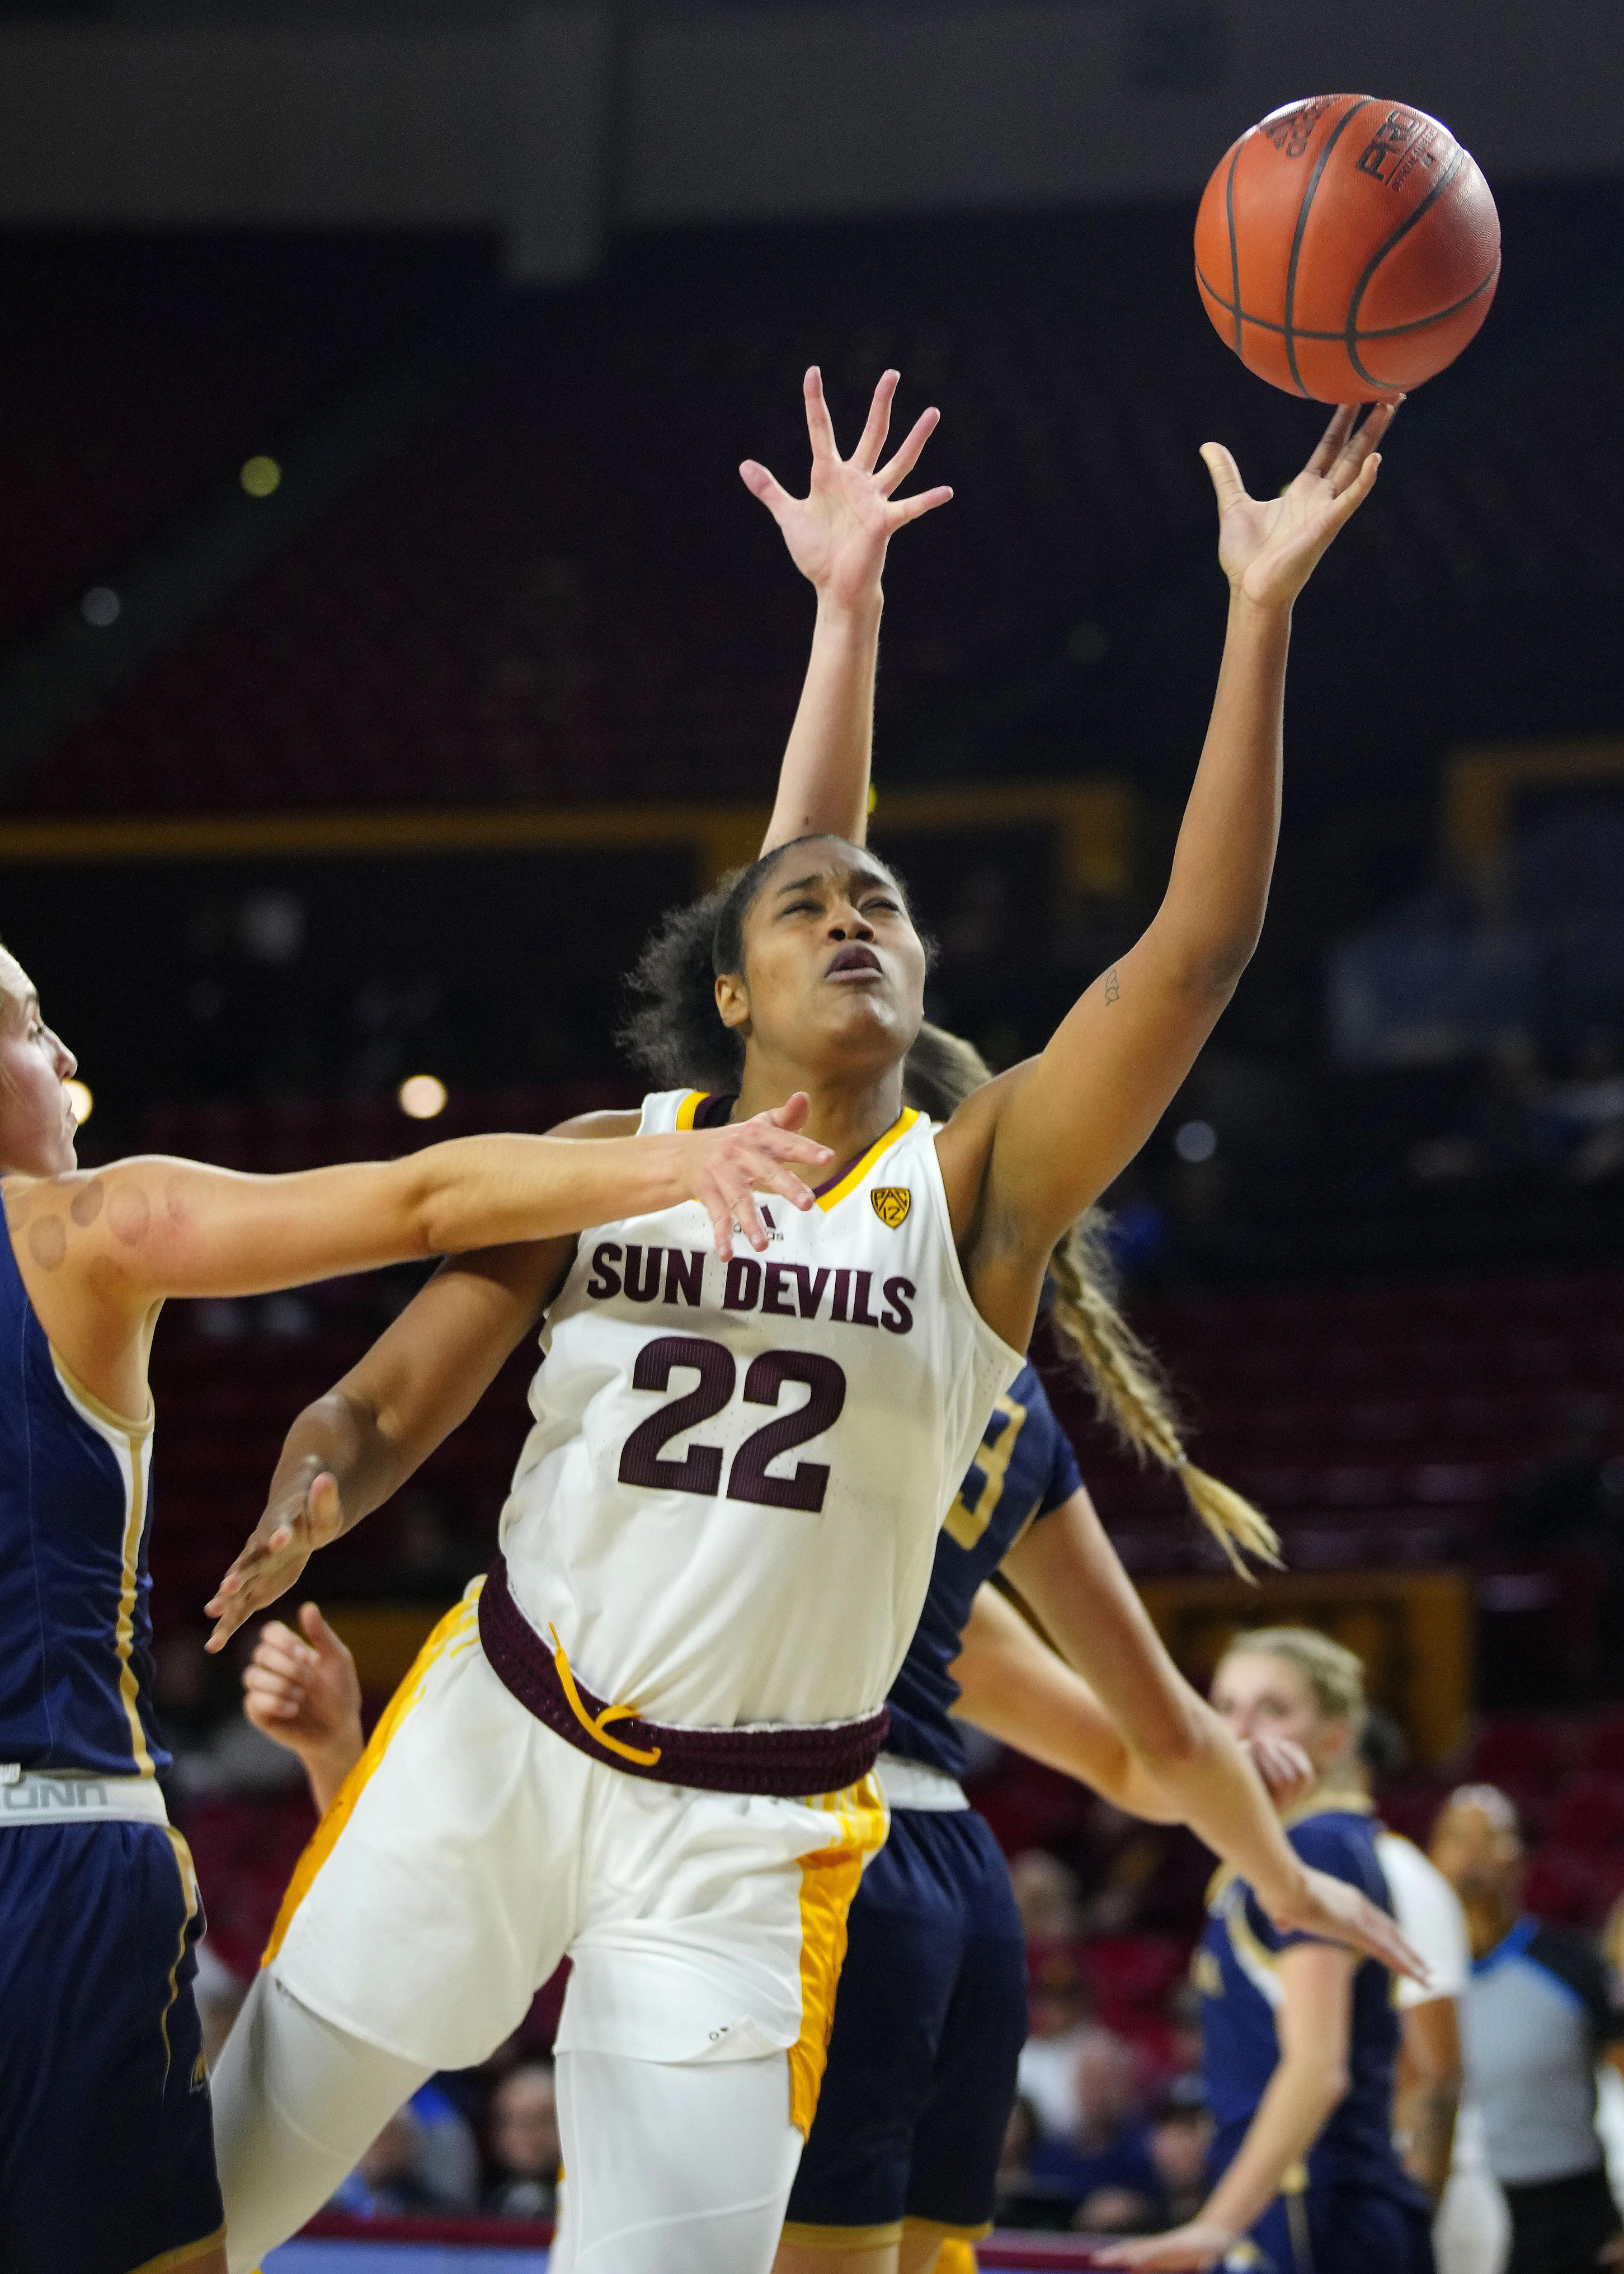 Jaddan Simmons hits career high, leads ASU women's basketball over Pacific